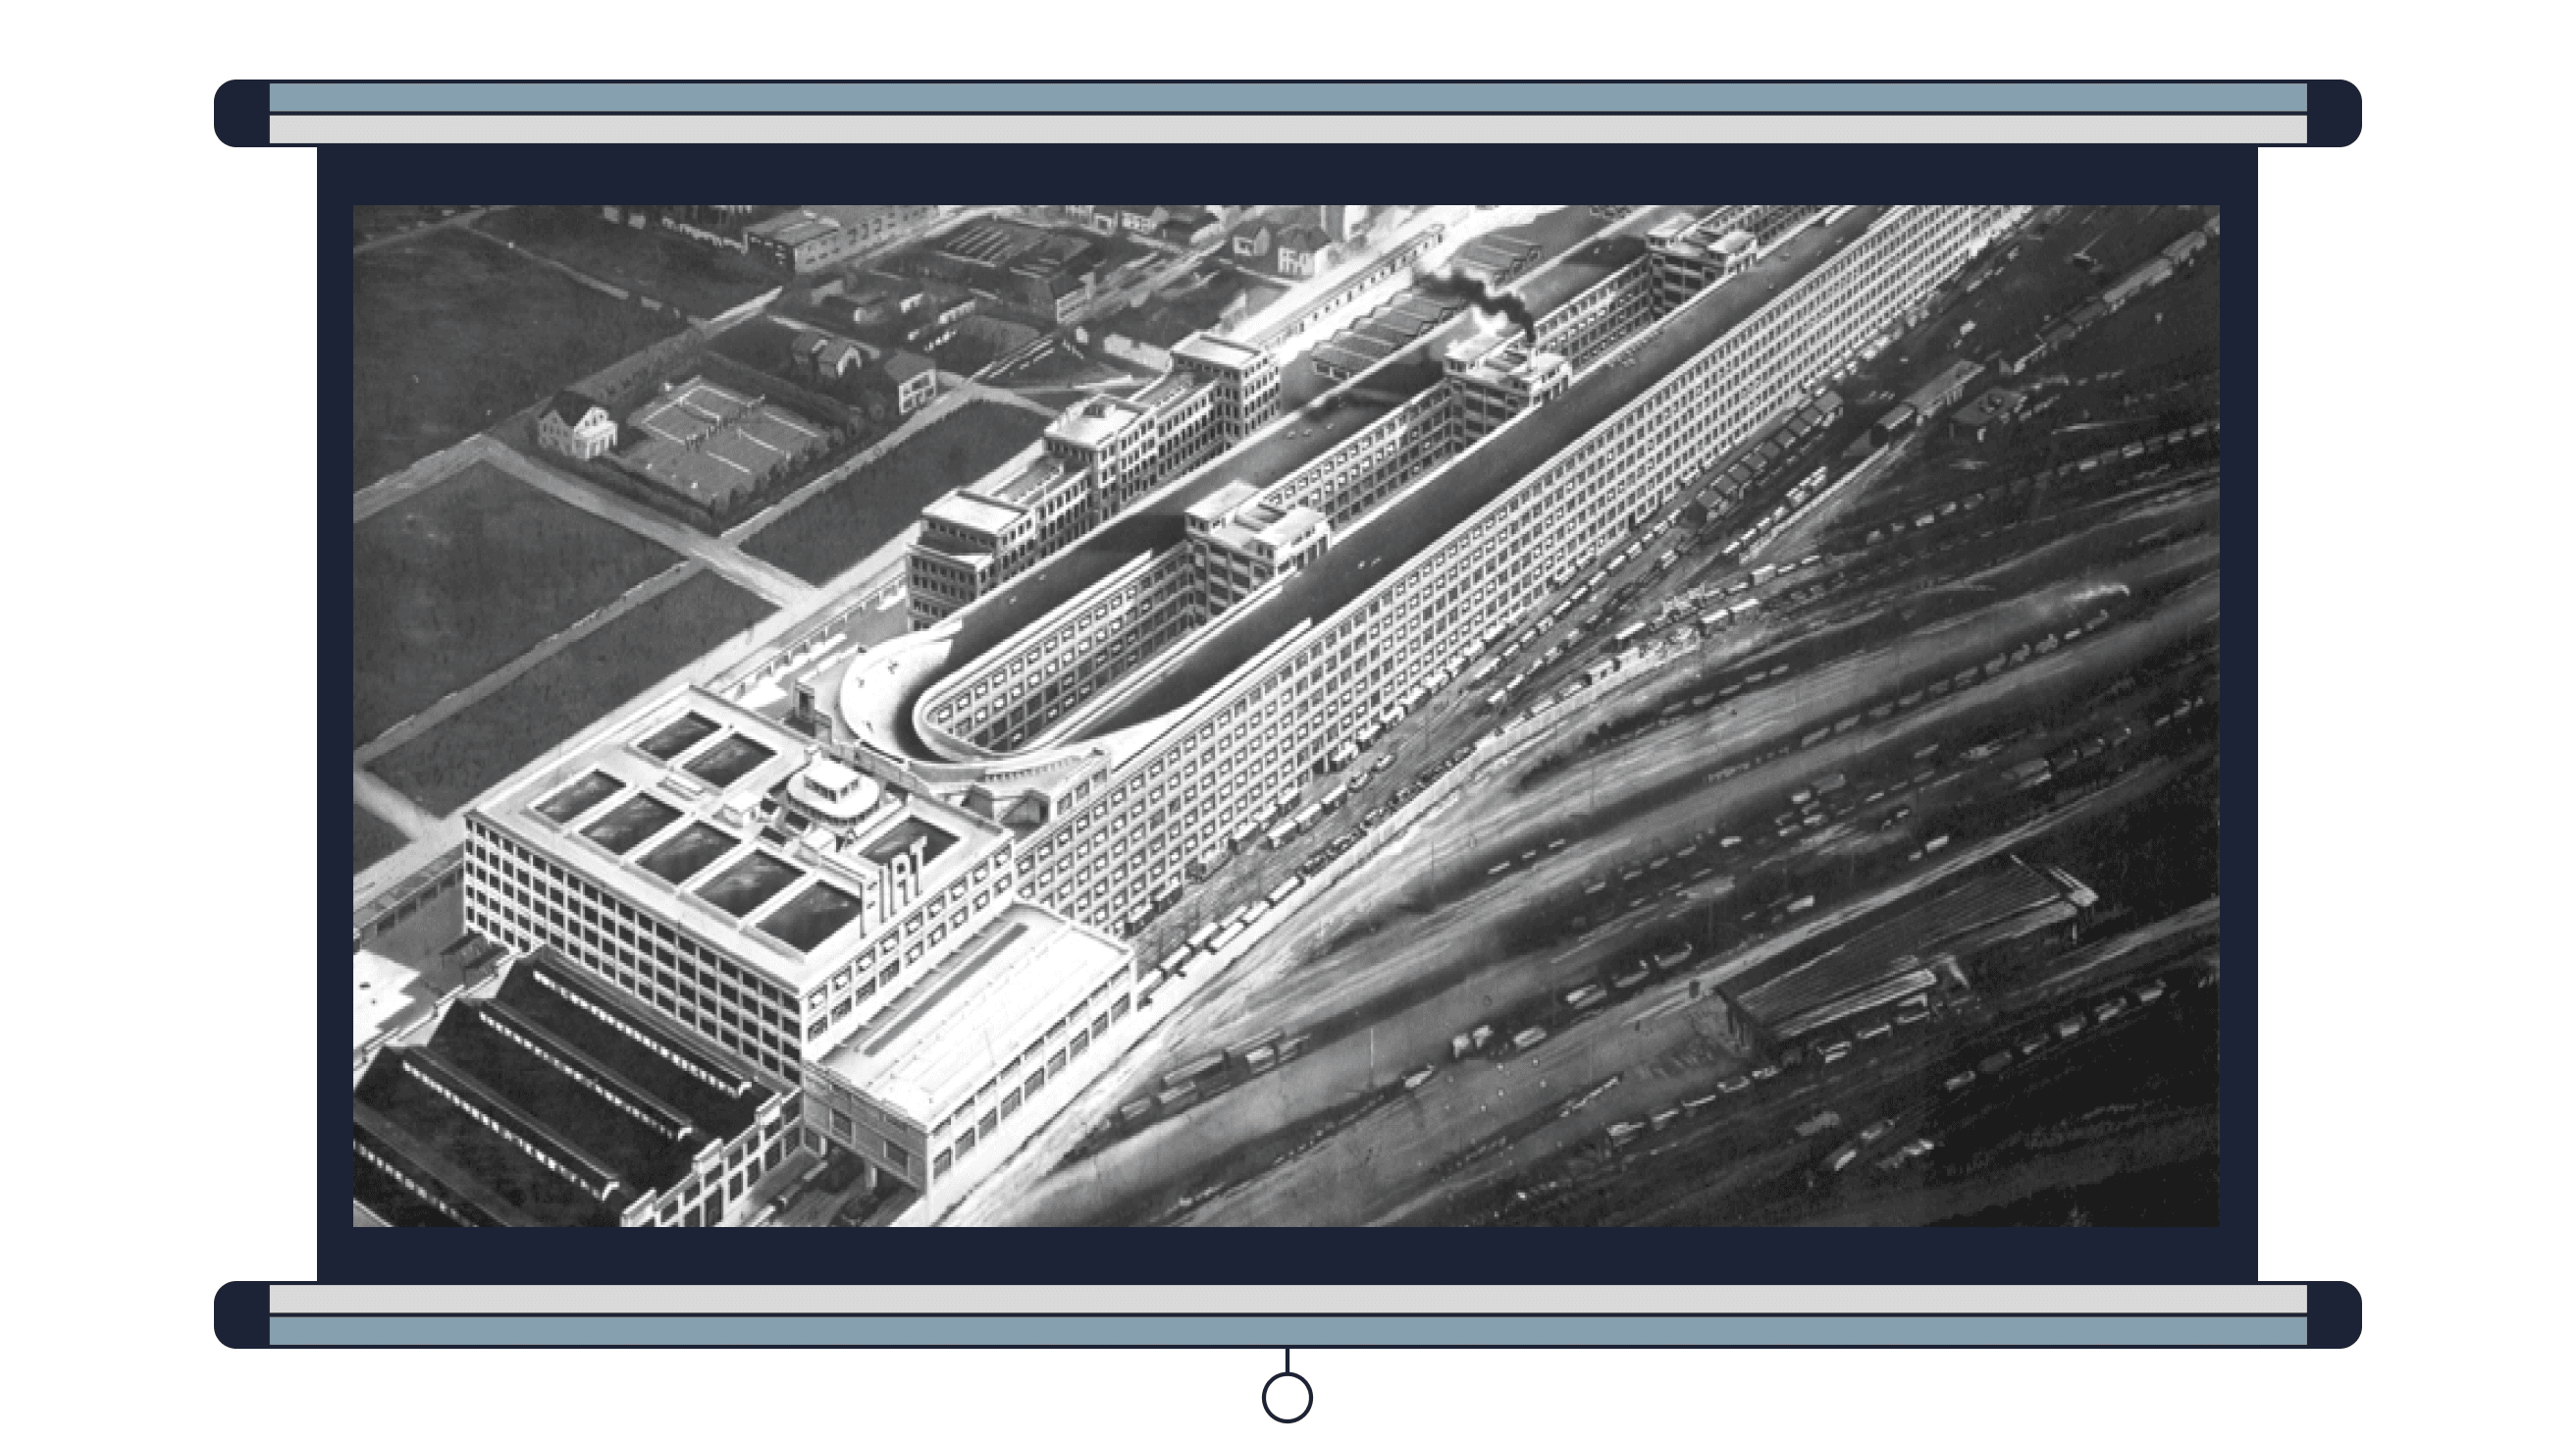 Пример 2. Завод Fiat Lingotto в Италии, на крыше которого расположилась гоночная трасса, архитектор Джакомо Матте-Трукко<br><br>Фото: Dgtmedia - Simone / Wikimedia Commons, CC BY-SA 3.0<br>